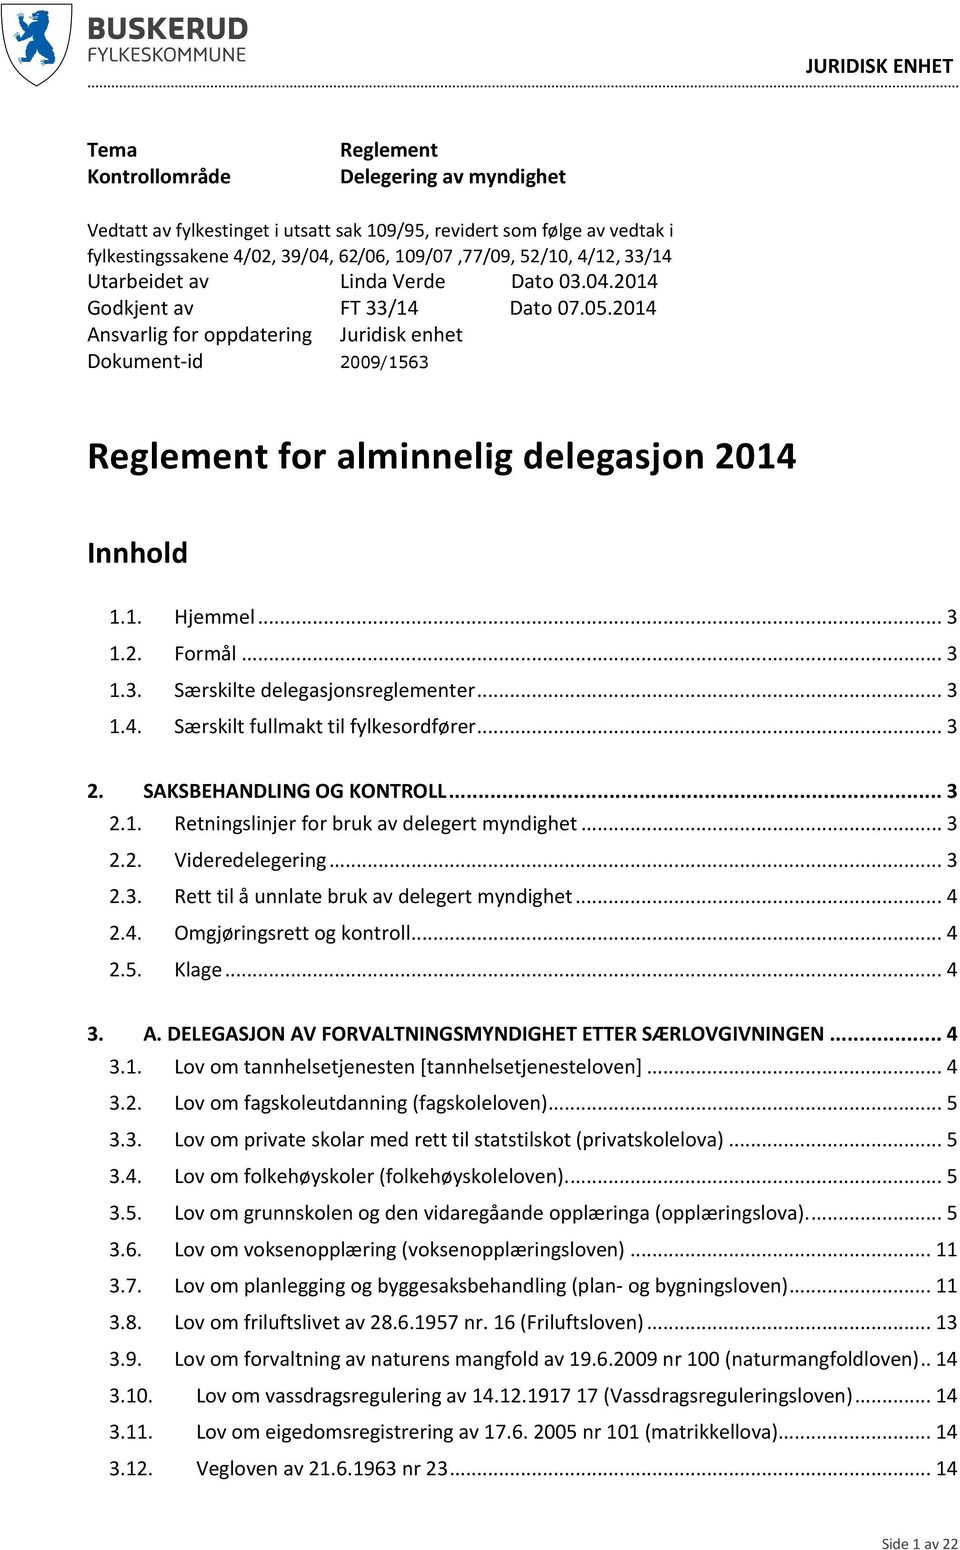 2014 Ansvarlig for oppdatering Juridisk enhet Dokument-id 2009/1563 Reglement for alminnelig delegasjon 2014 Innhold 1.1. Hjemmel... 3 1.2. Formål... 3 1.3. Særskilte delegasjonsreglementer... 3 1.4. Særskilt fullmakt til fylkesordfører.